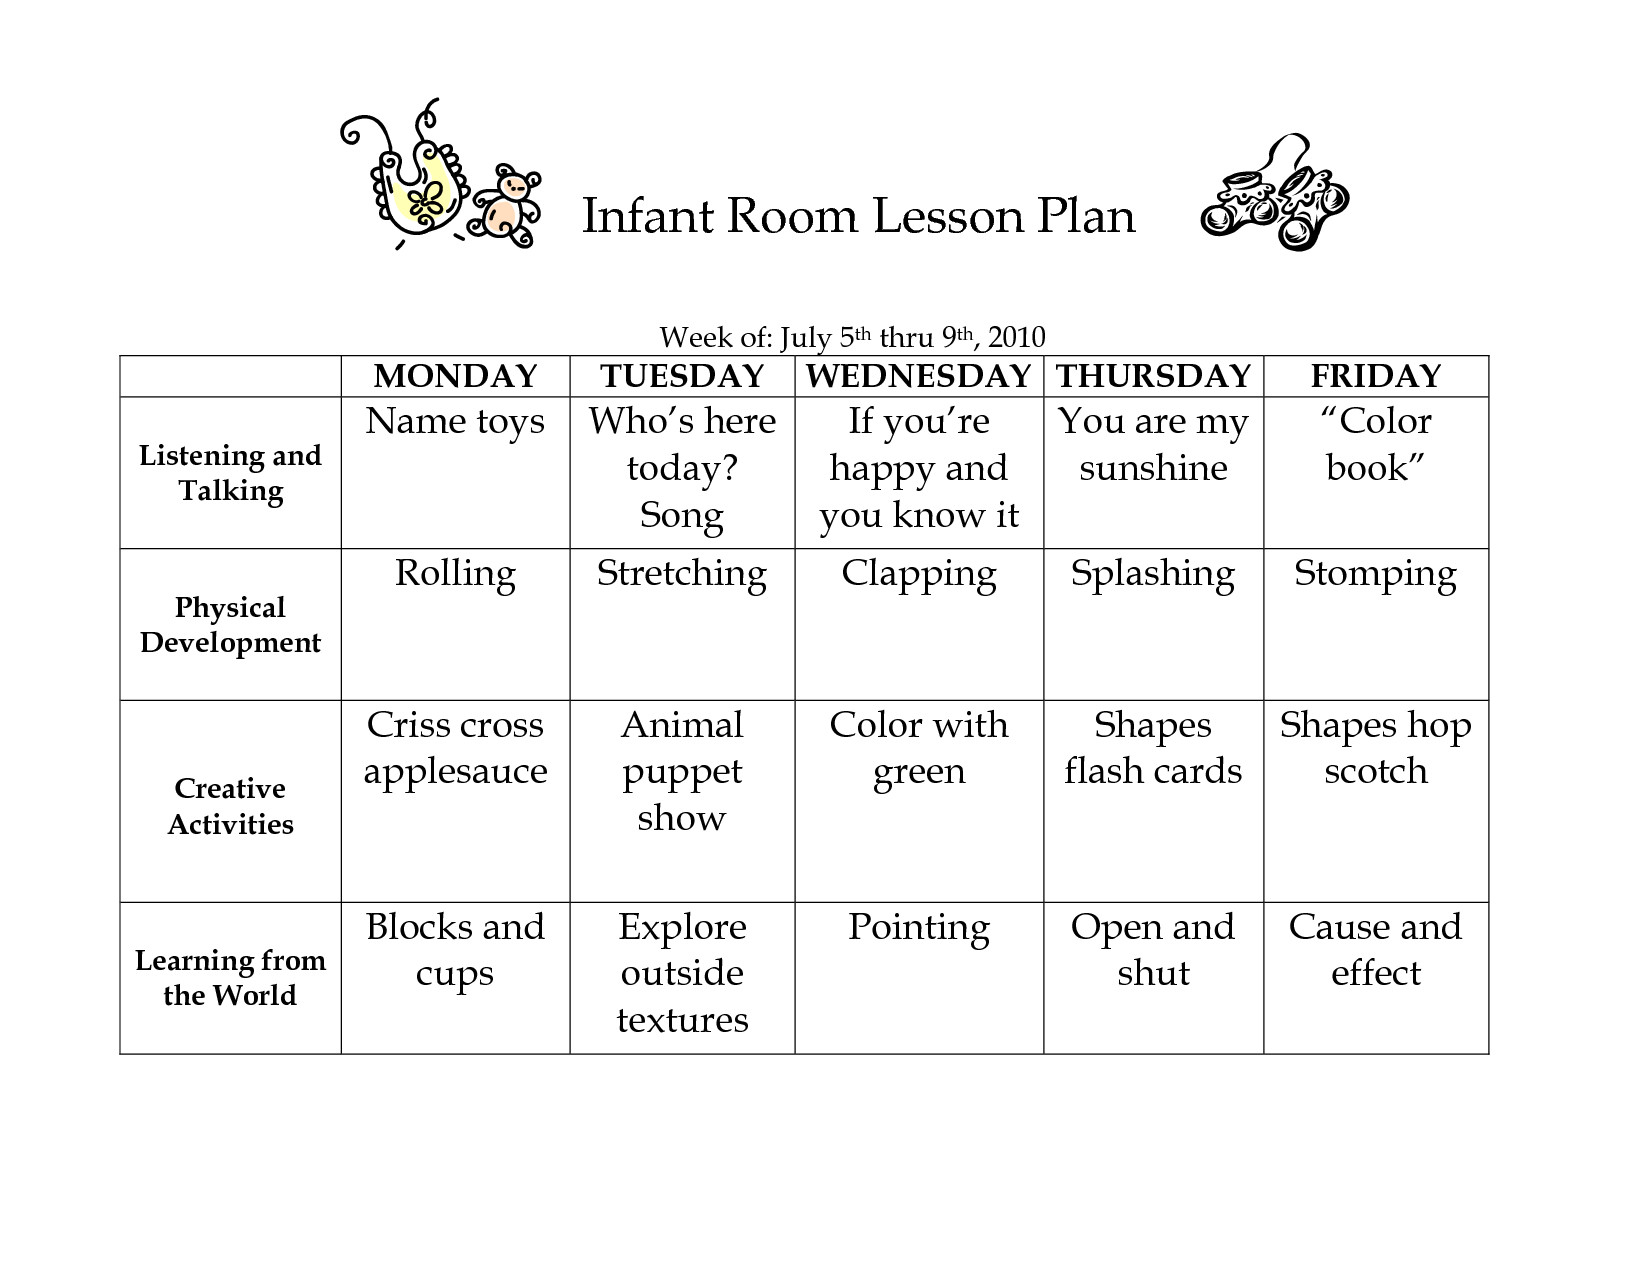 Infant Room Lesson Plans Infant Room Lesson Plan Westlake Childcare by Linzhengnd